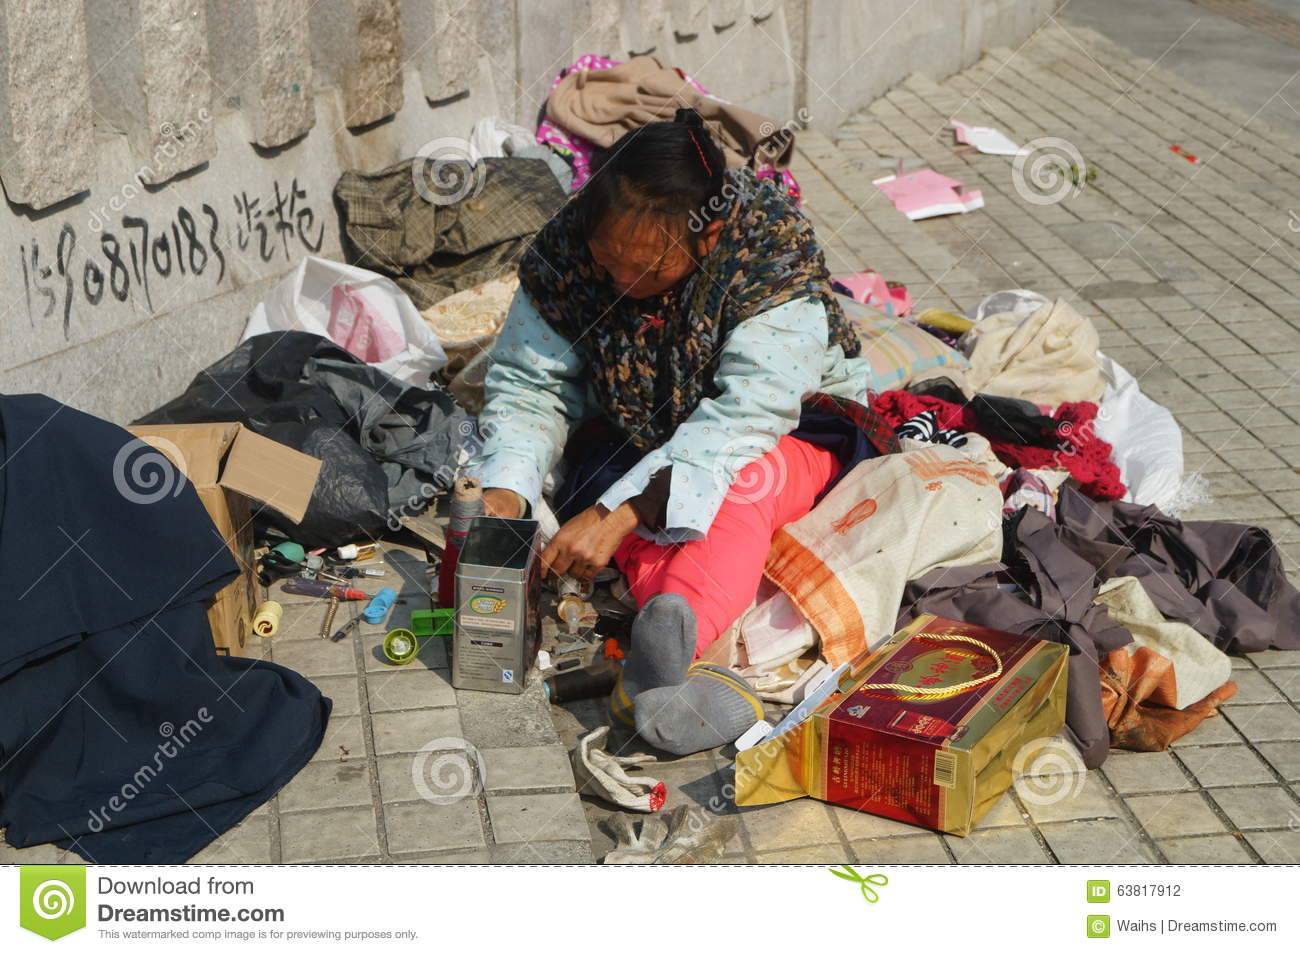 streets-homeless-people-shenzhen-xixiang-china-63817912.jpg